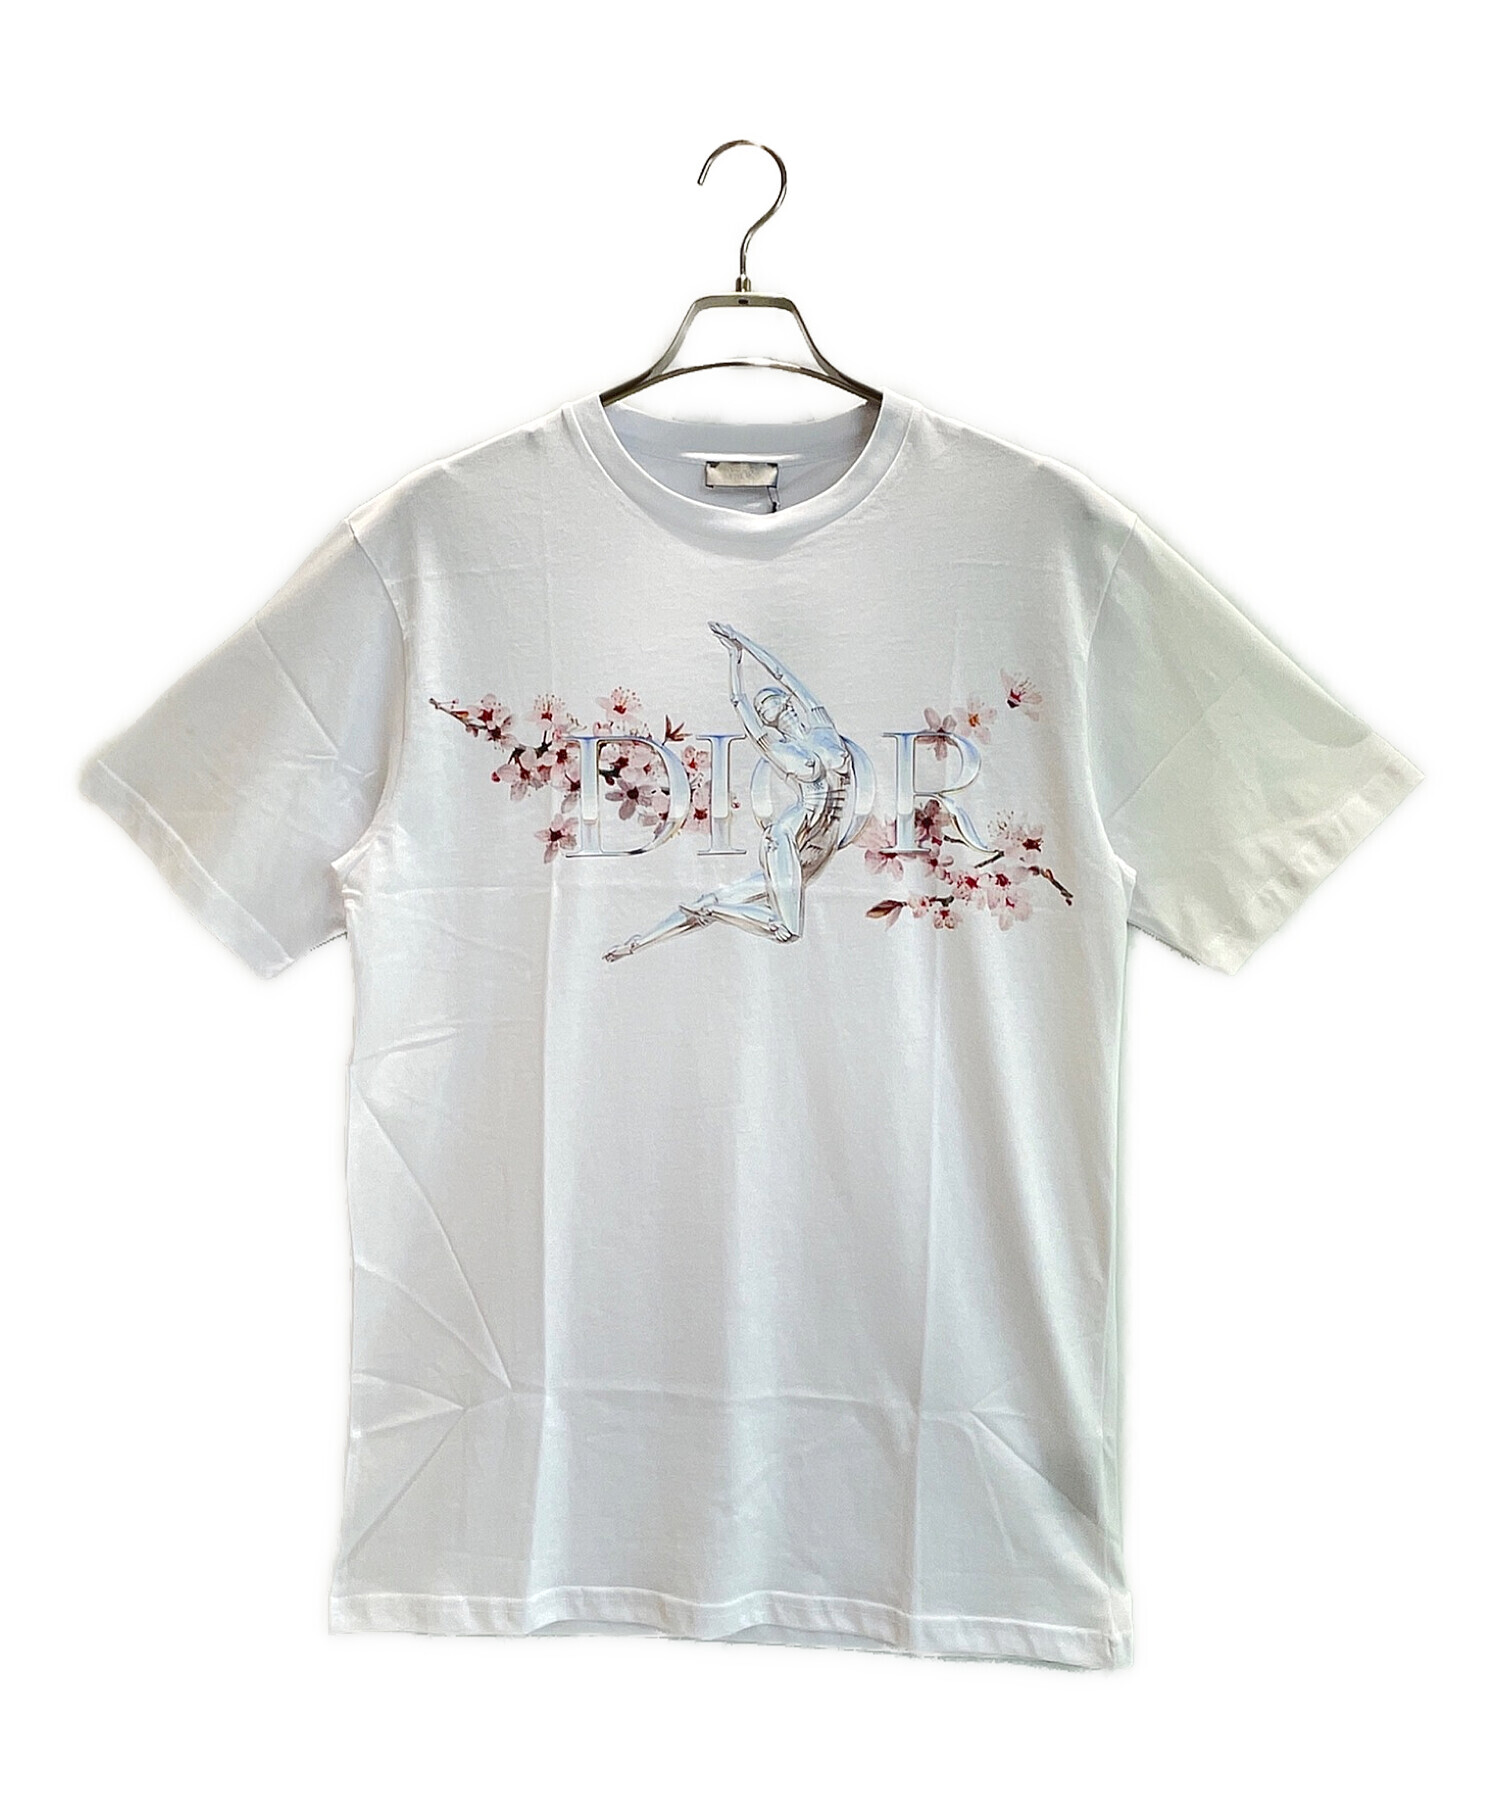 Dior Homme×空山基 (ディオール オム ソラヤマ ハジメ) セクシーロボットプリントTシャツ ホワイト サイズ:S 未使用品